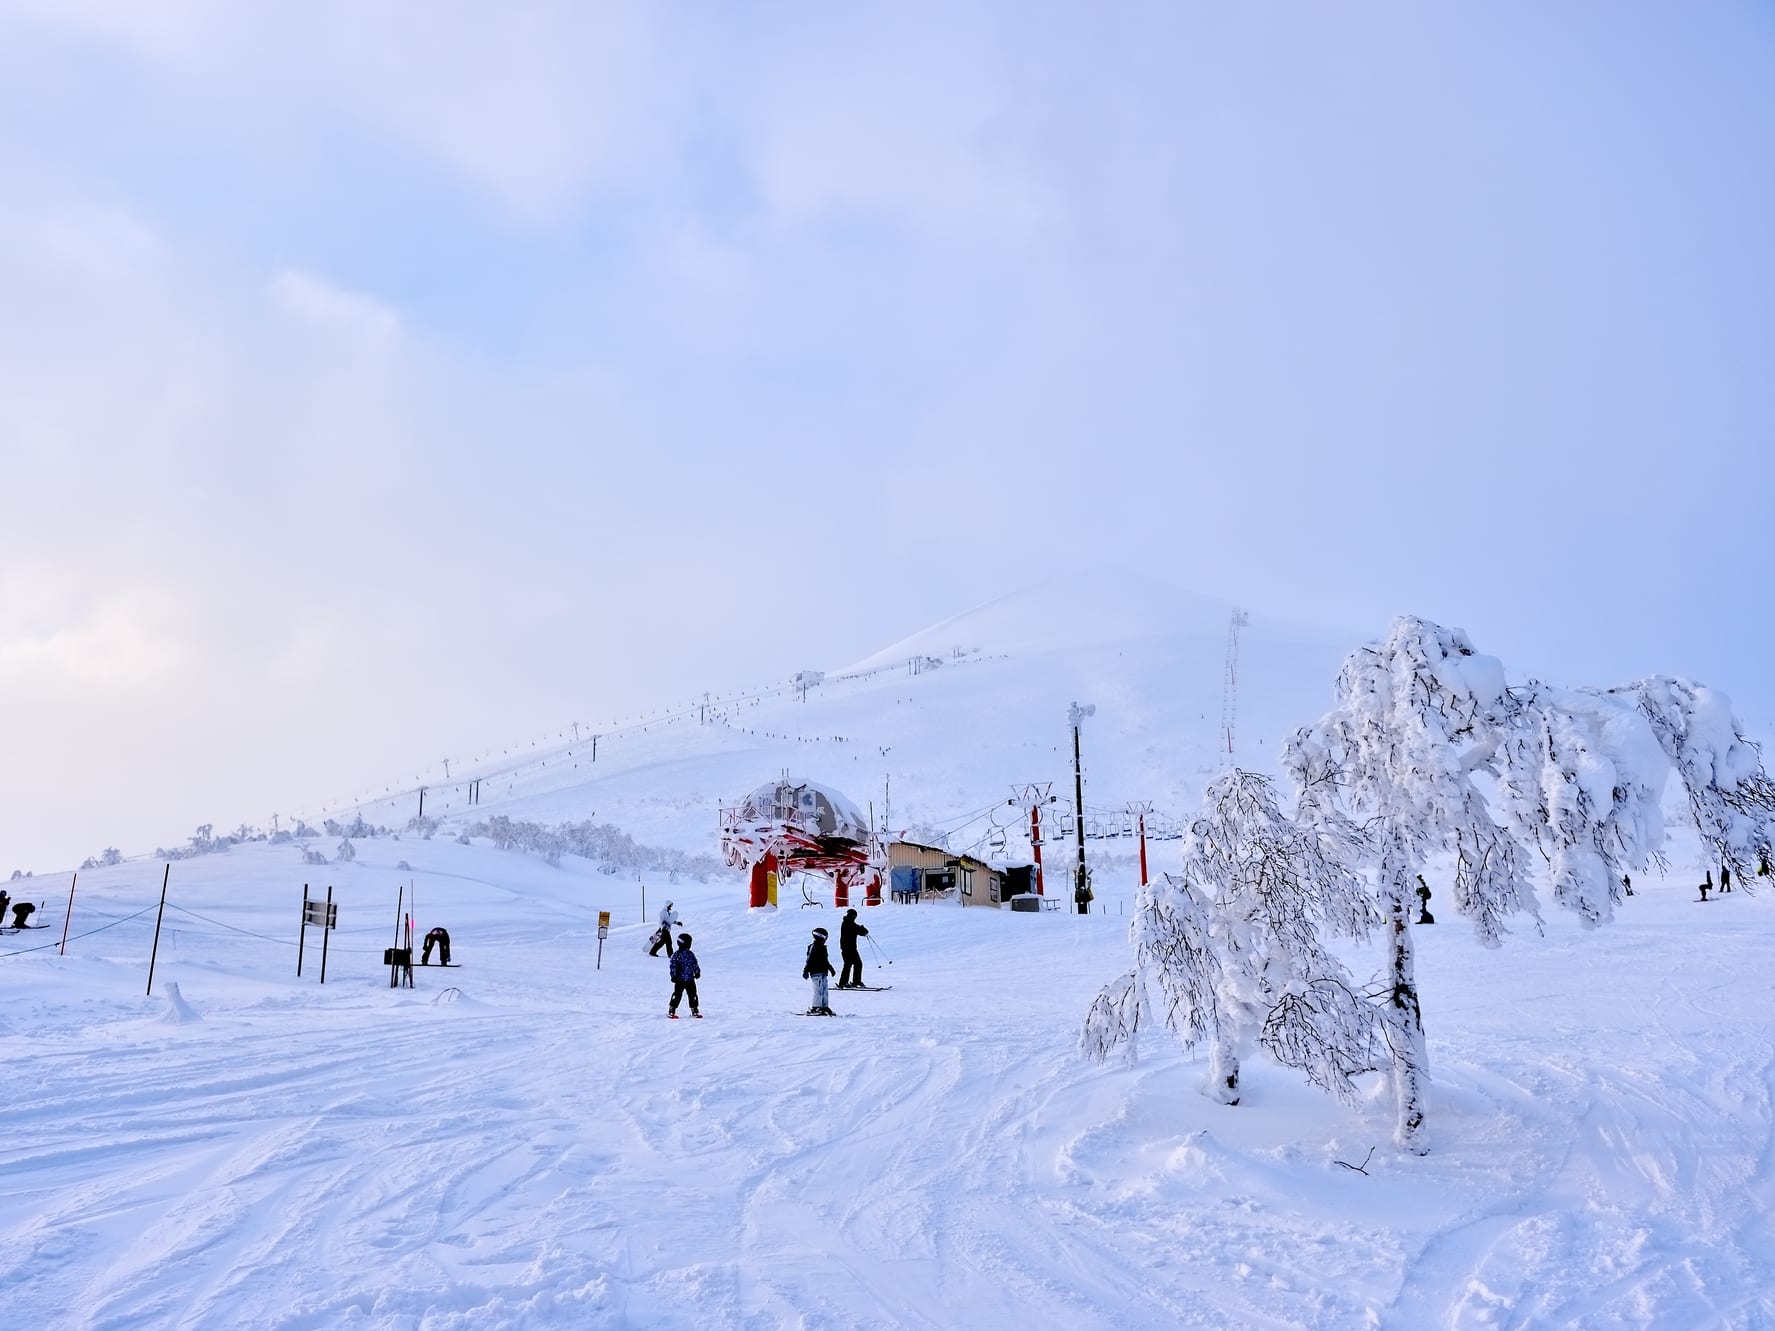 札幌市内 スキーリフト割引クーポン 2枚 - スキー場